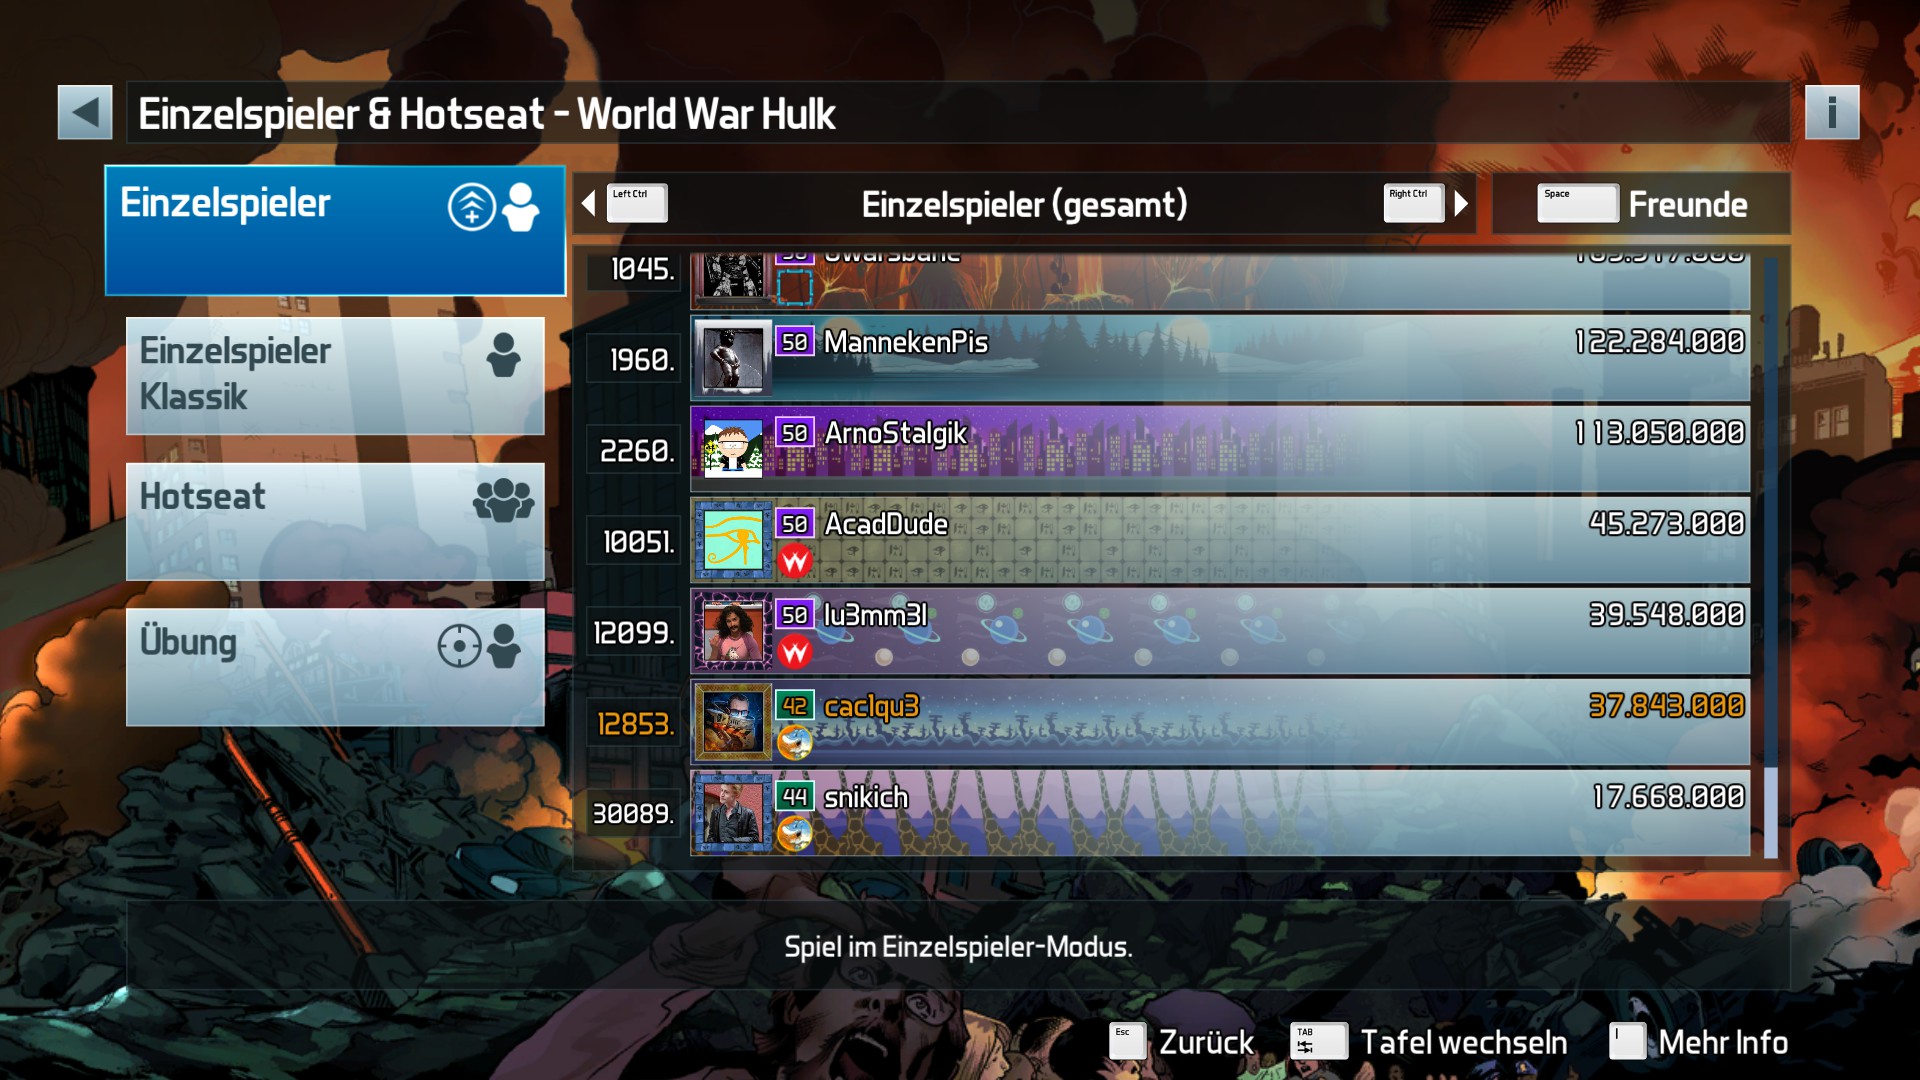 e2e4: Pinball FX3: World War Hulk (PC) 37,843,000 points on 2022-05-20 11:29:37